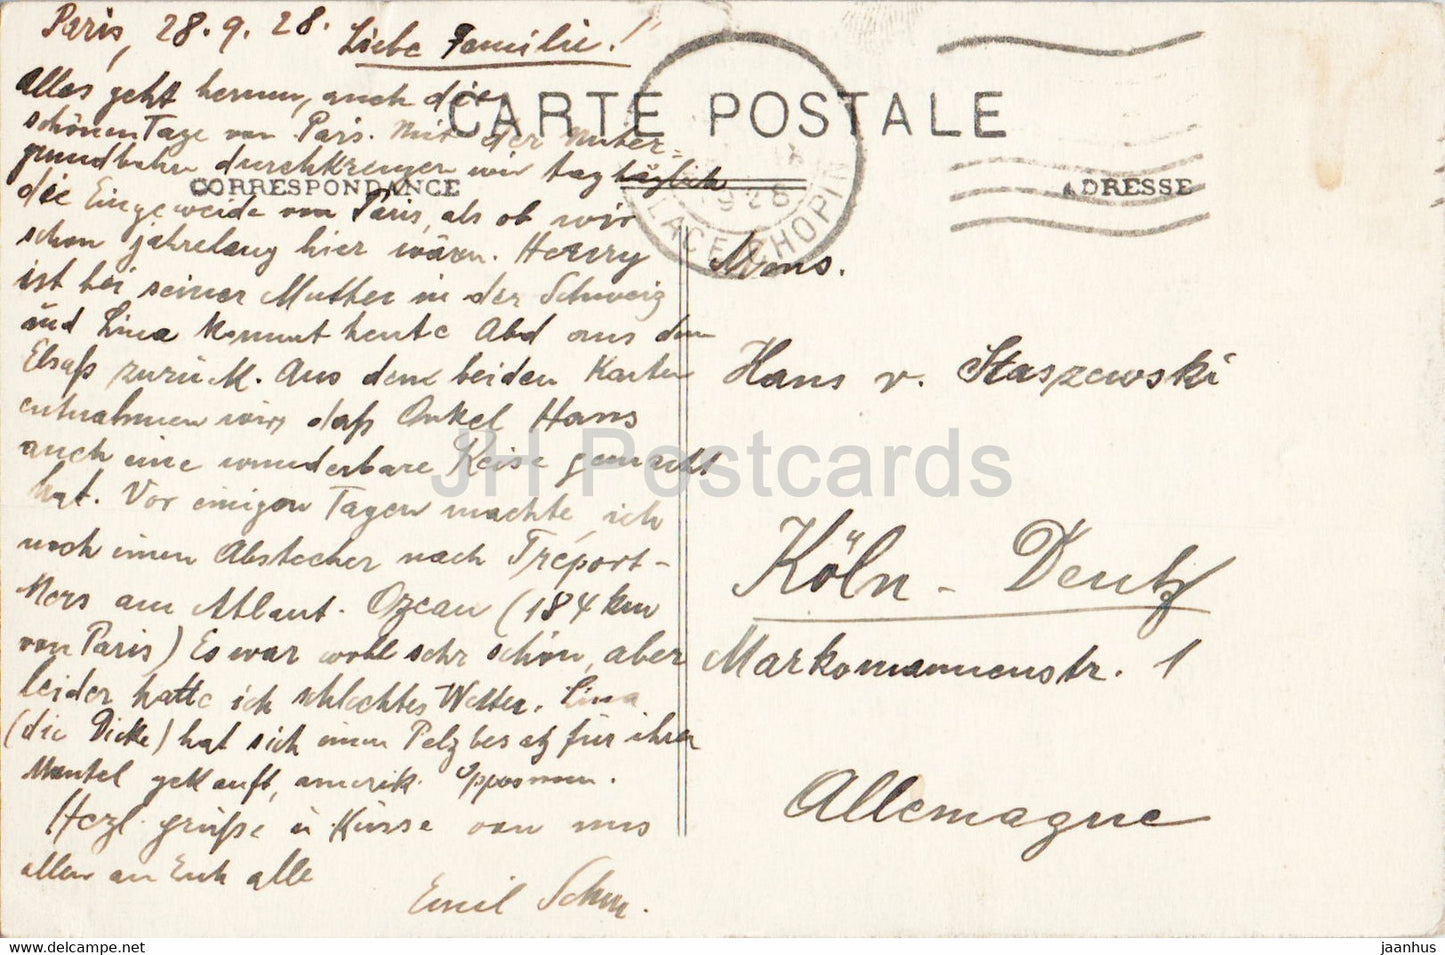 Paris - L'Arc de Triomphe - La Foule devant le Tombeau du Soldat Francais - 129 - alte Postkarte - 1928 - Frankreich - gebraucht